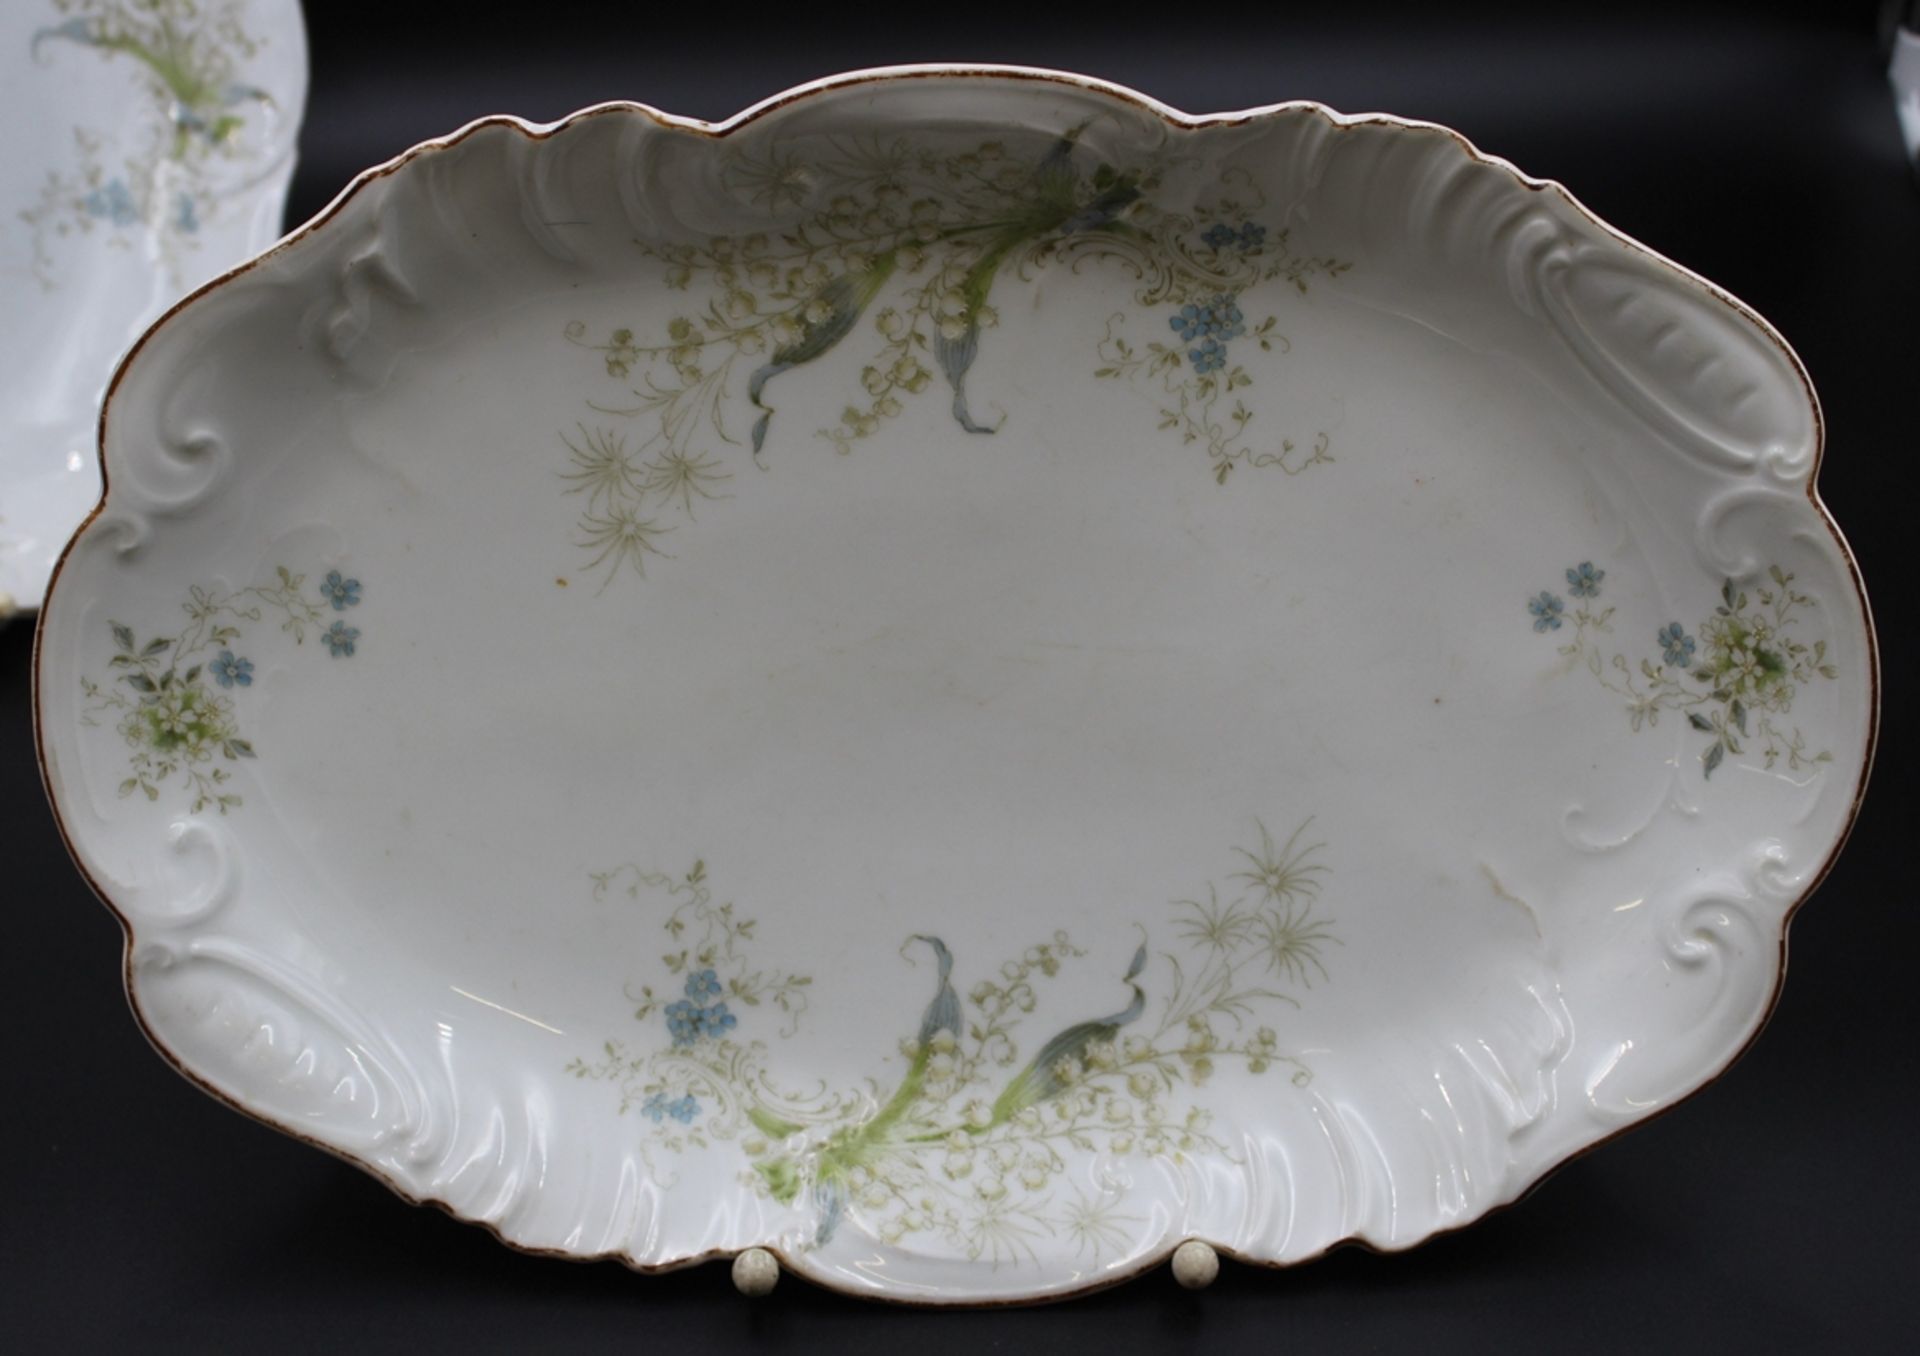 gr. Terrine, ovale Platte und runde Platte, um 1900, florale Bemalung,  1x Platte gemarkt Otto Schm - Bild 2 aus 4